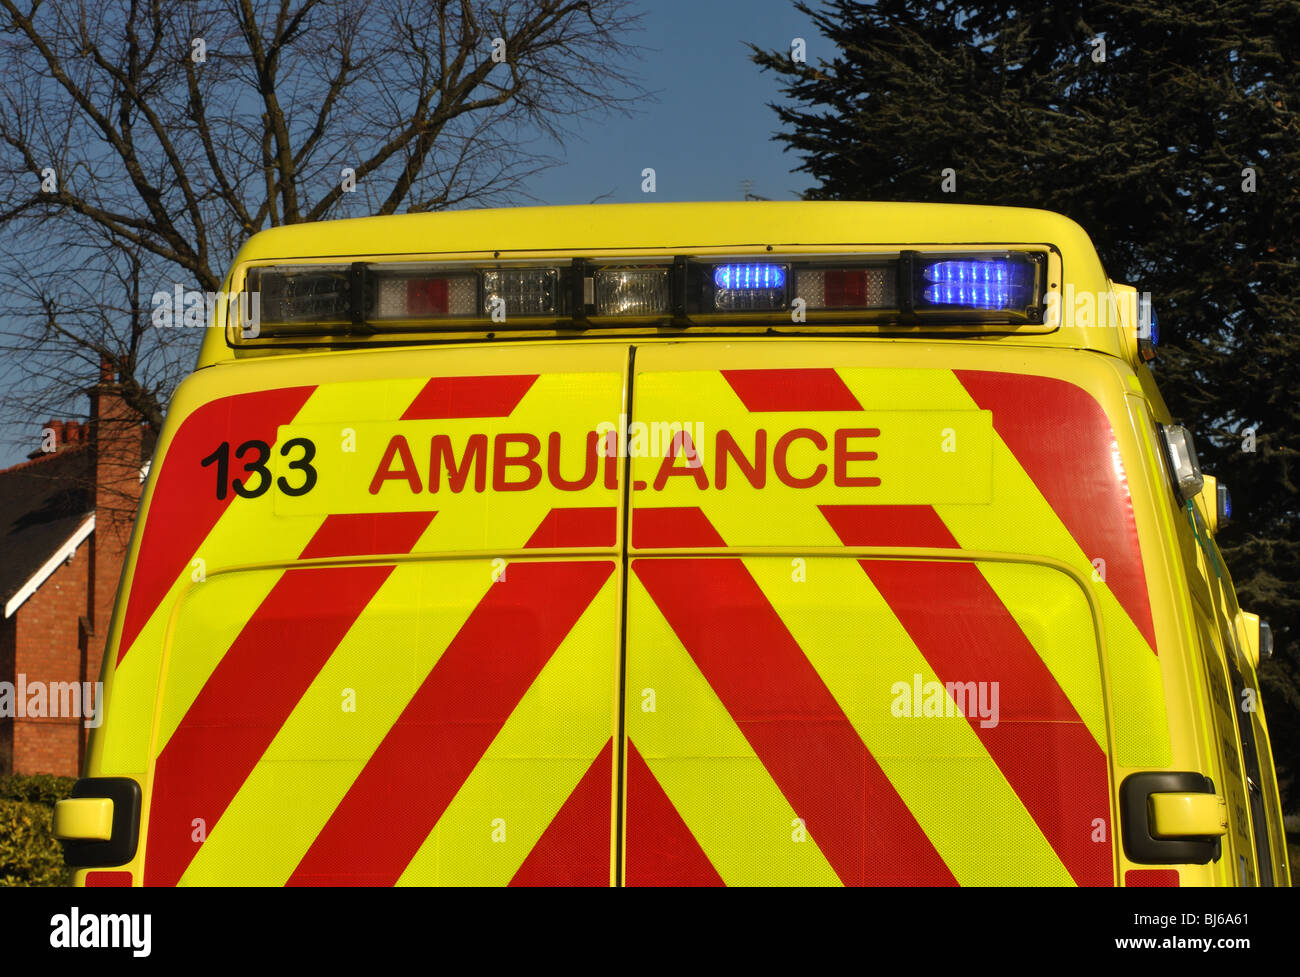 Back of an ambulance, UK Stock Photo